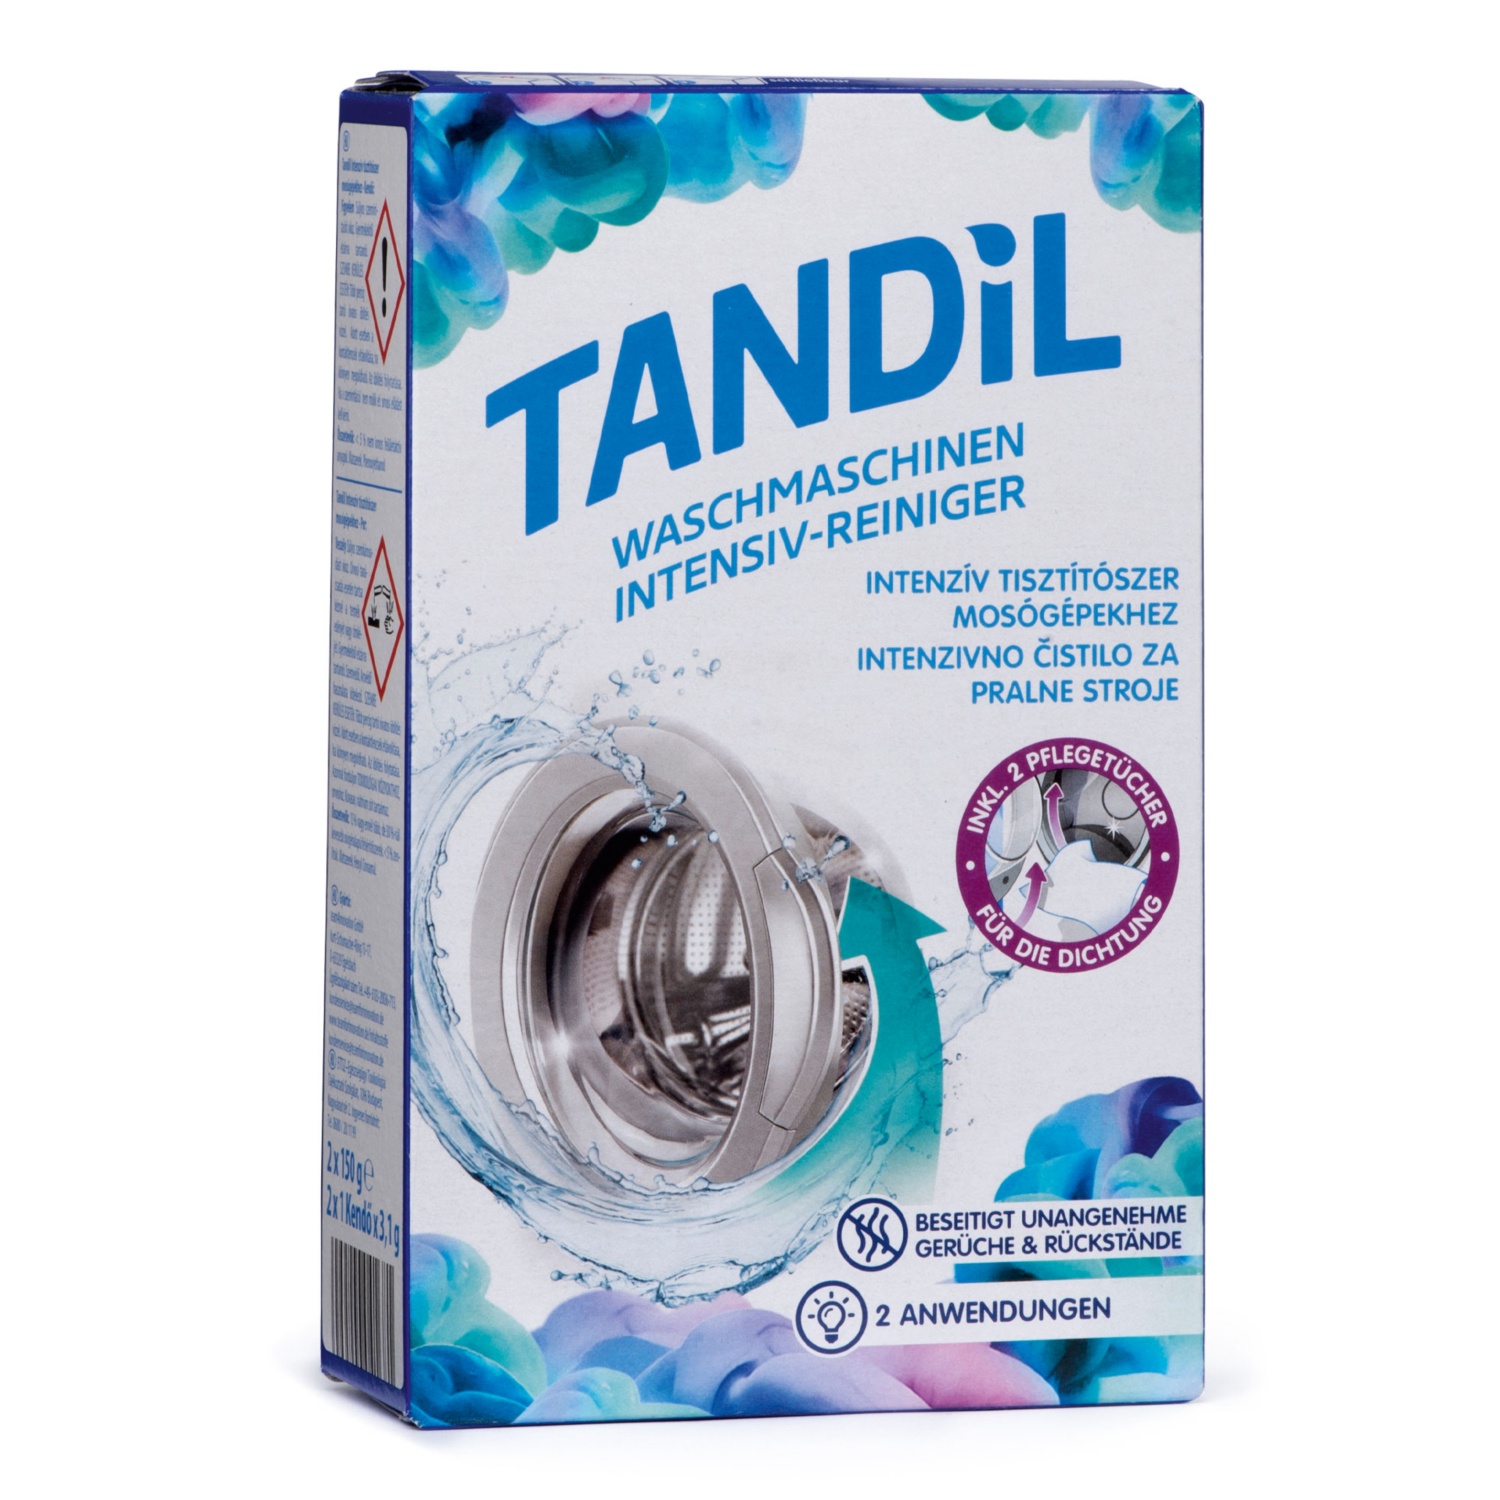 TANDIL Waschmaschinen-Intensiv-Reiniger